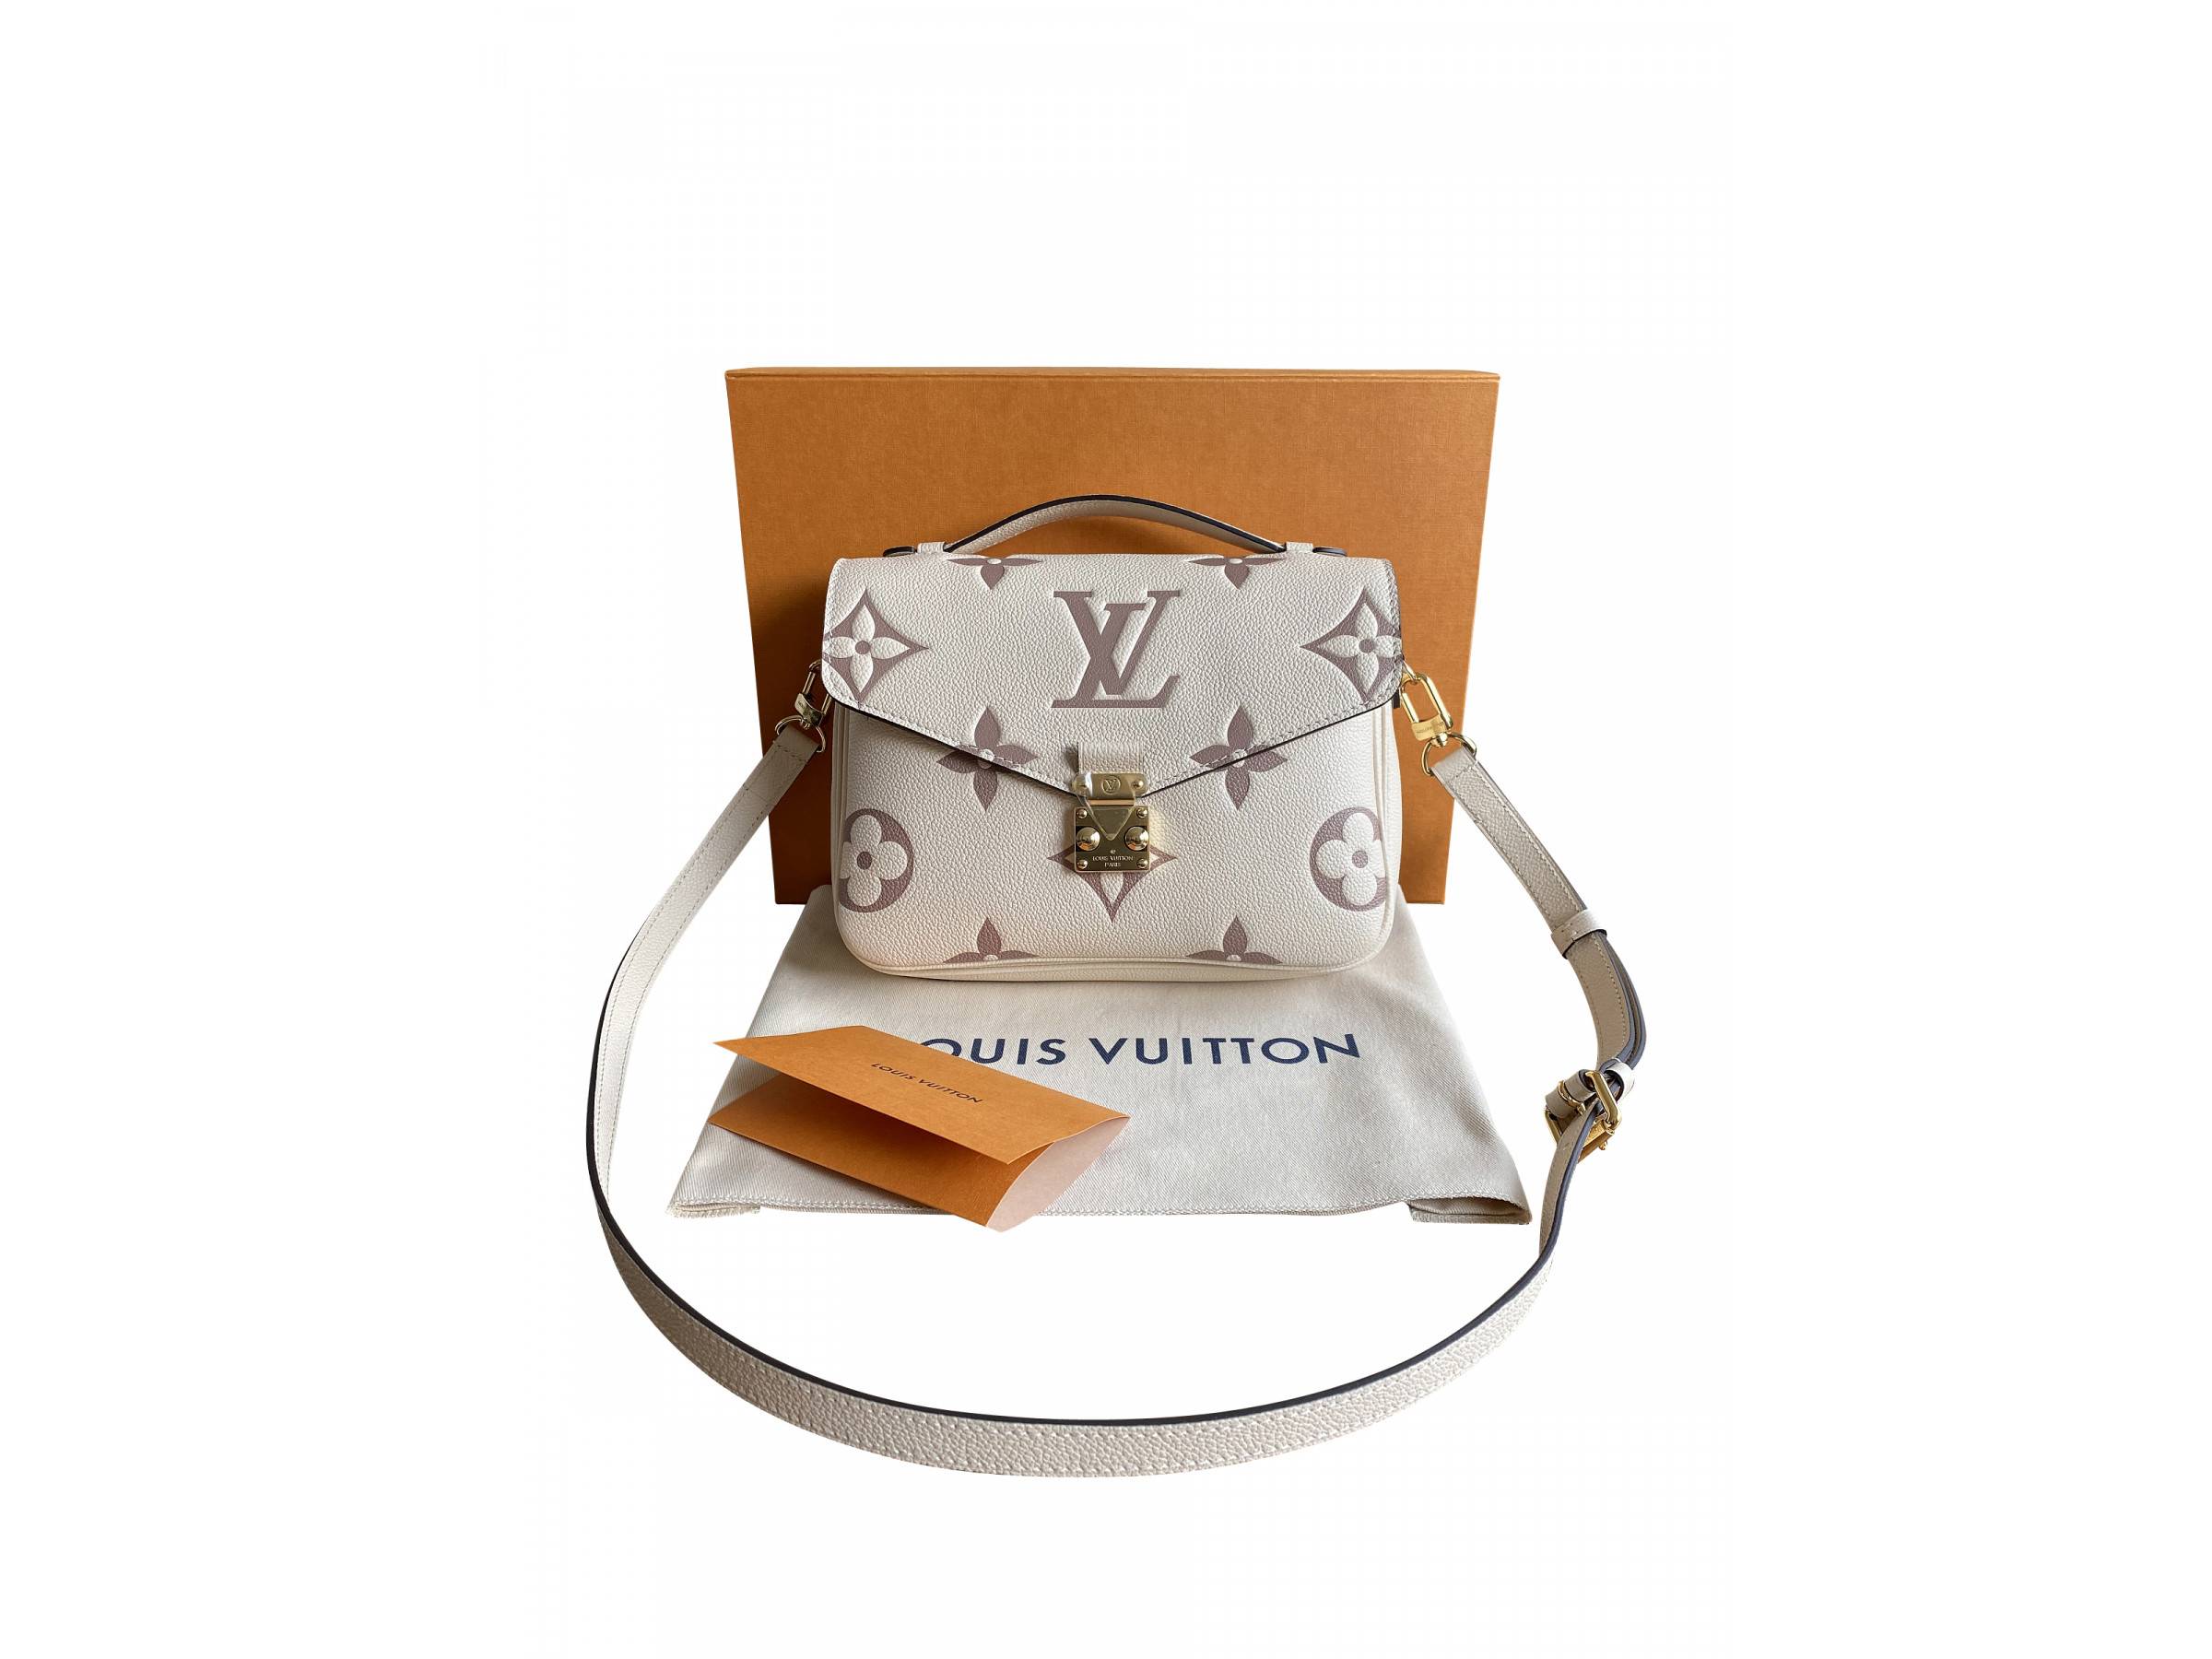 VERKAUFT - Louis Vuitton M45596 Pochette Metis Métis Monogram Empreinte  Leder mit Rechnungsbeleg * NIE getragen